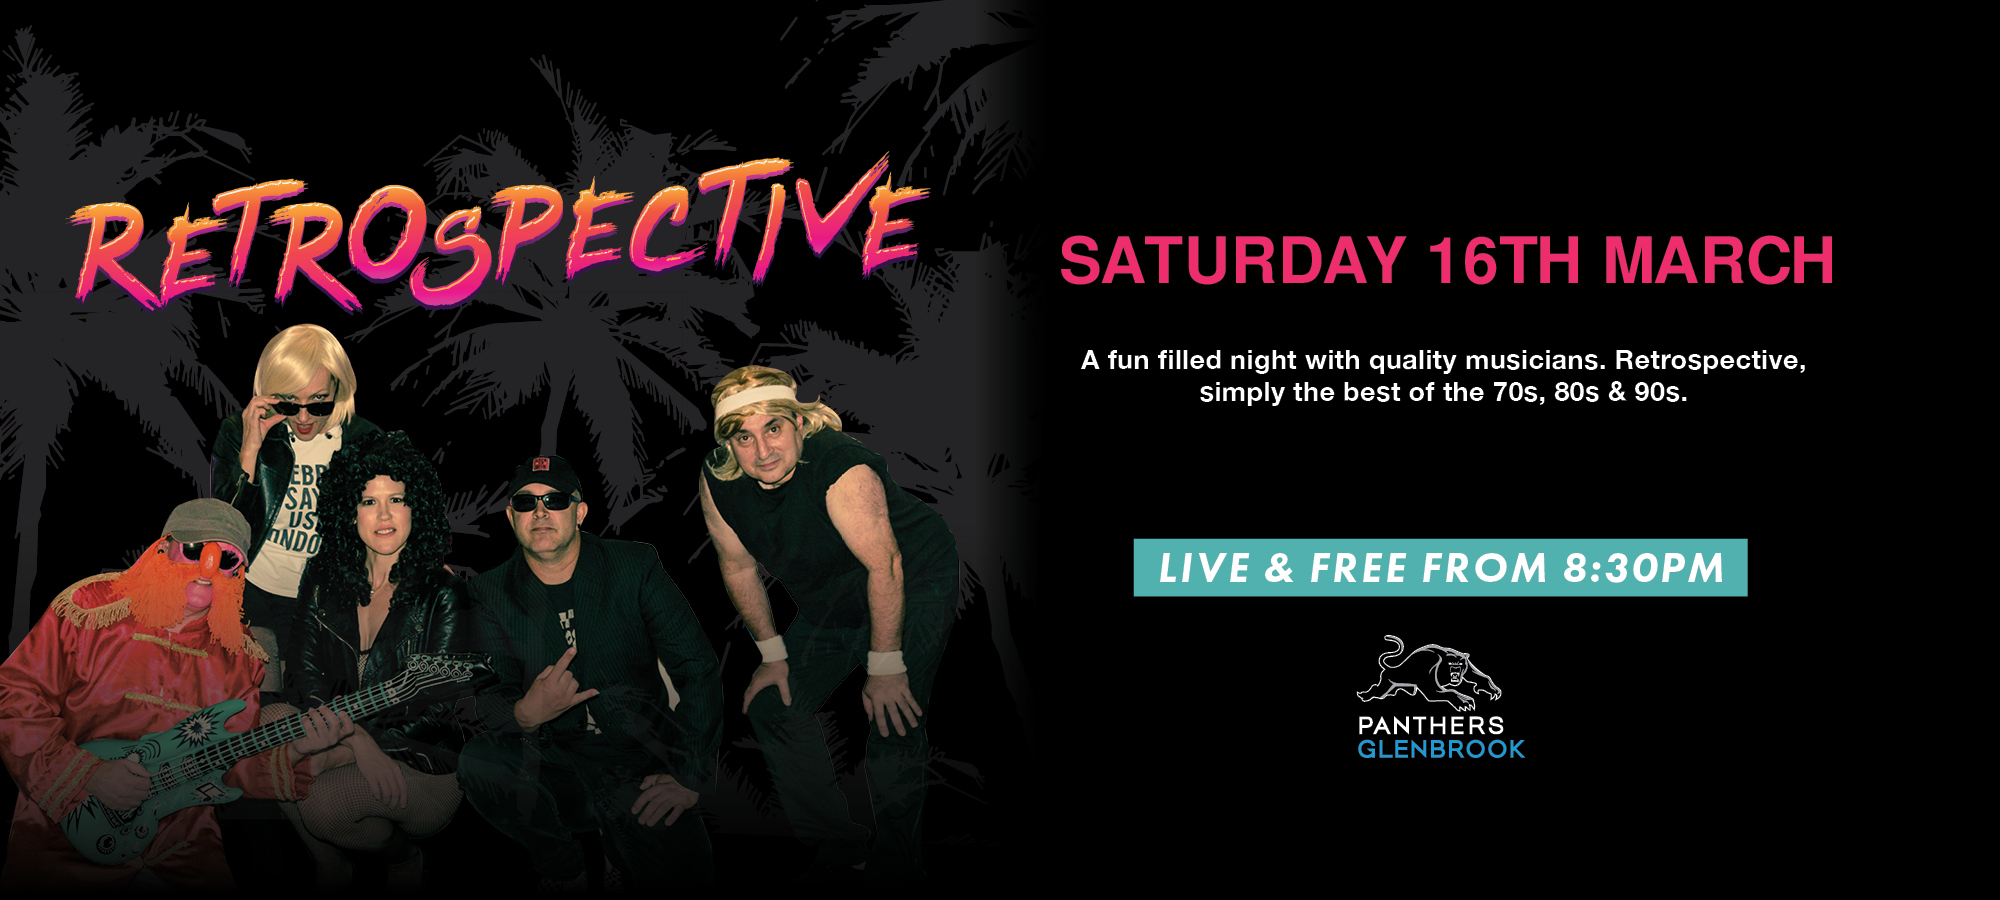 Retrospective – Saturday Live Entertainment in March